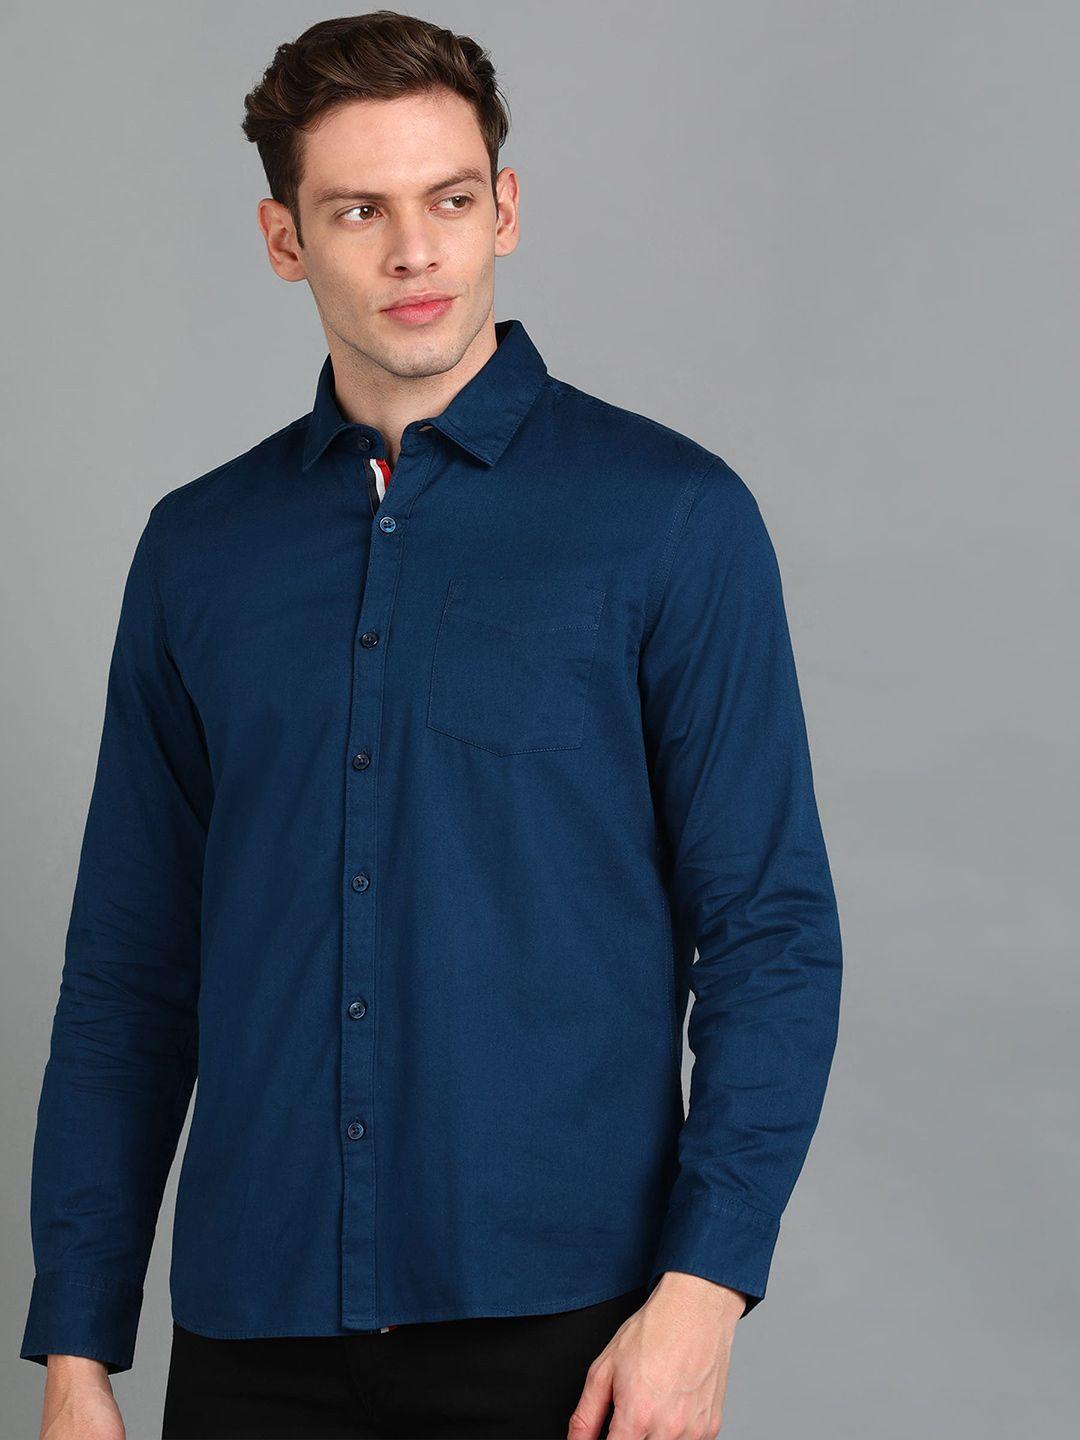 urbano fashion spread collar slim fit pure cotton casual shirt